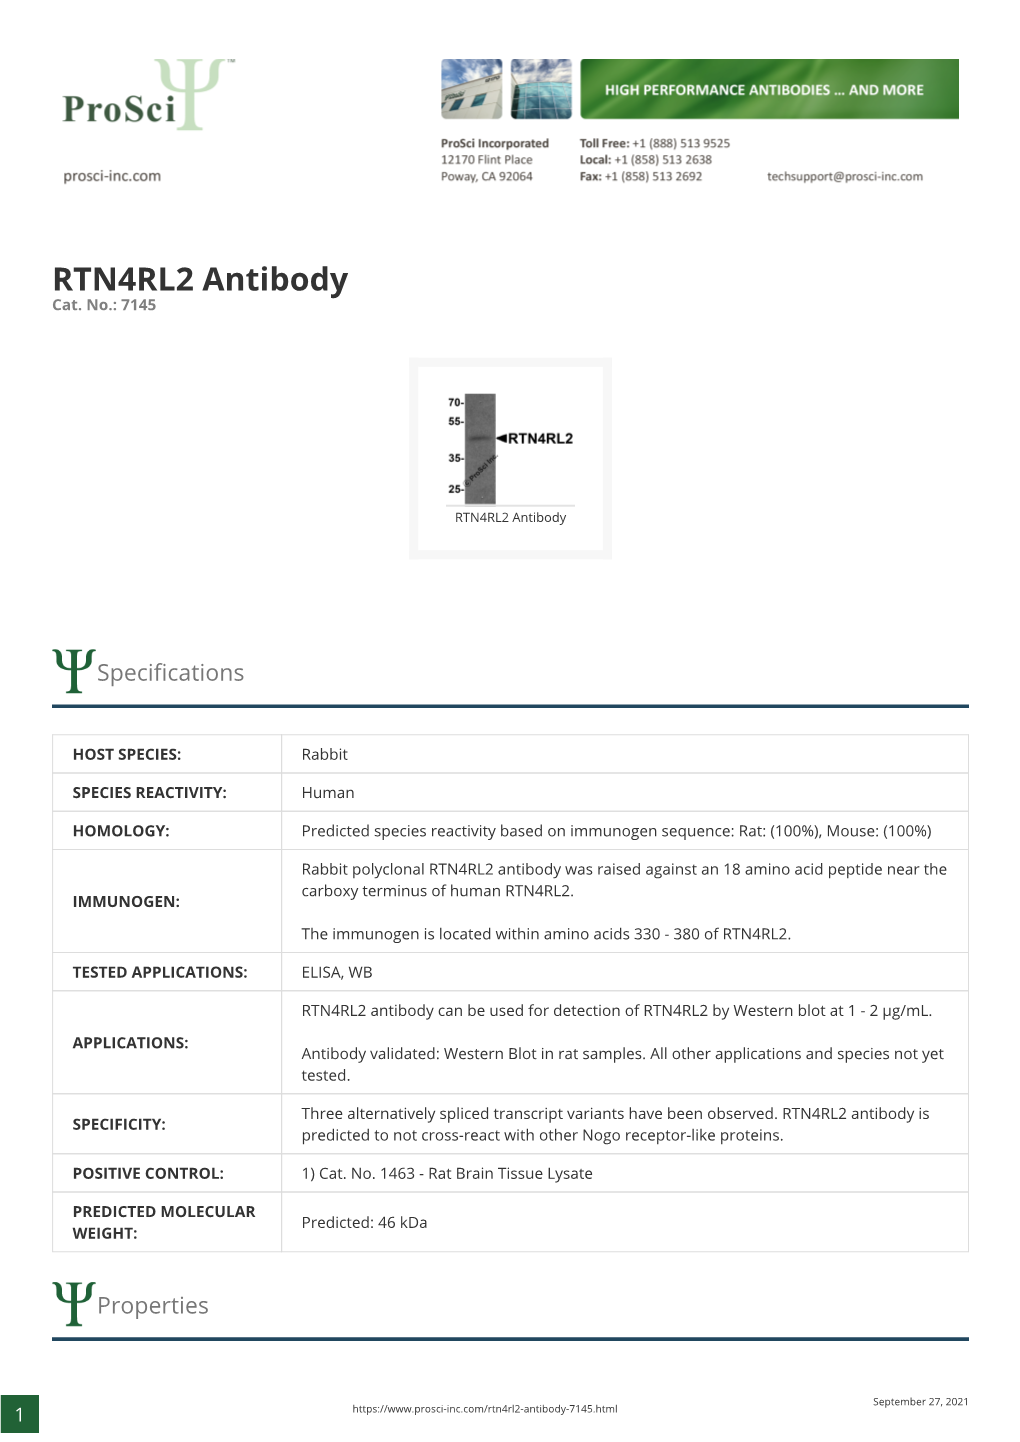 RTN4RL2 Antibody Cat